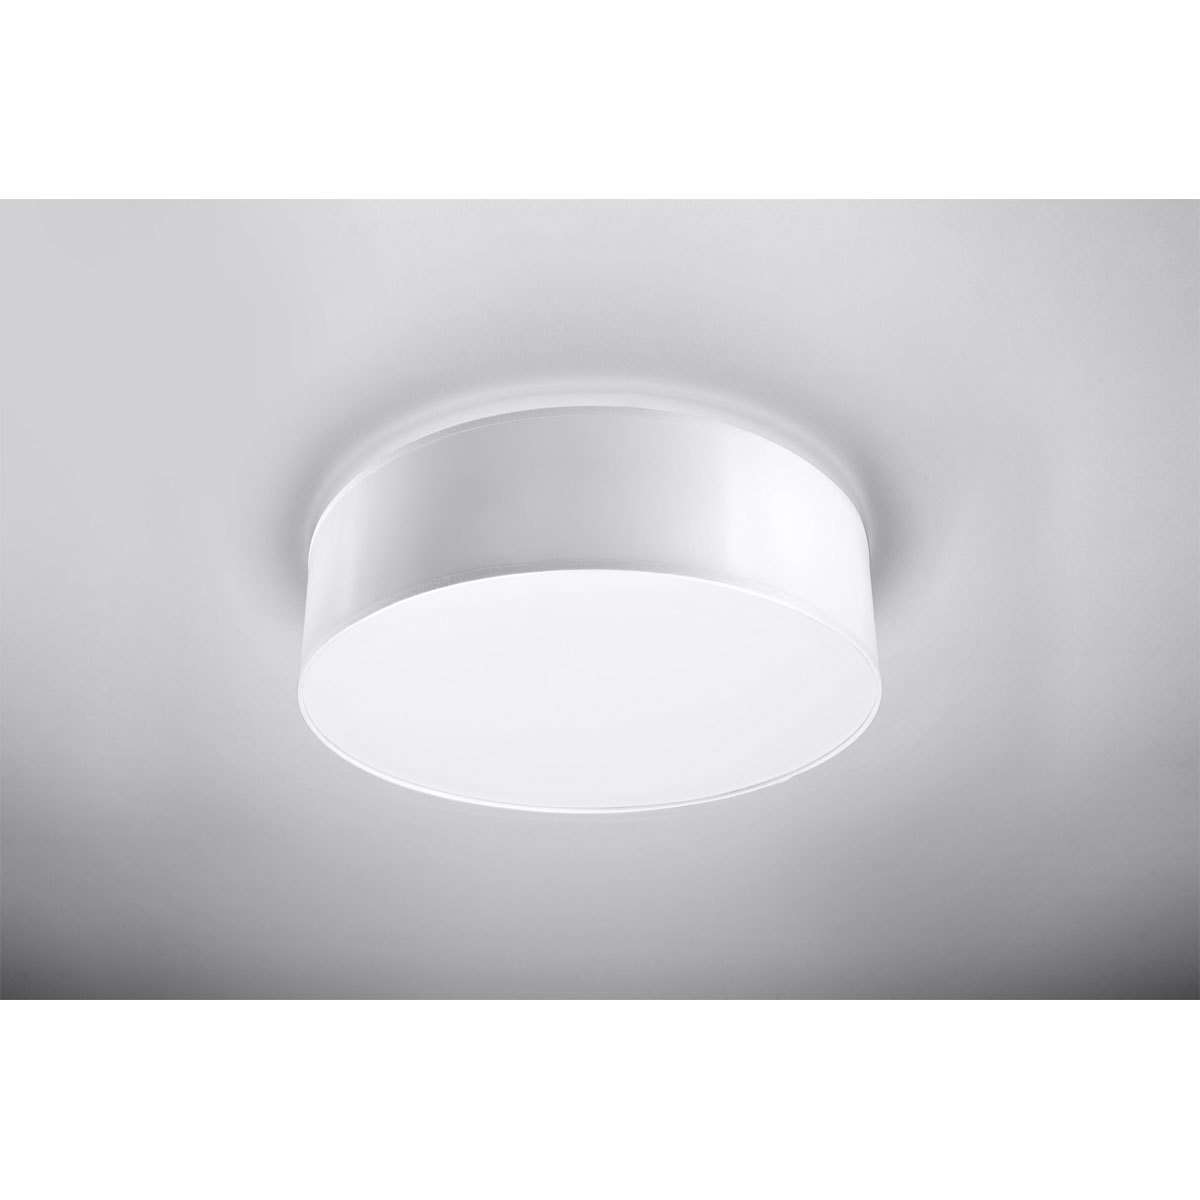 Sollux Lighting Deckenleuchte Spots weiß Arena | K000049459 2 | weiß 2 